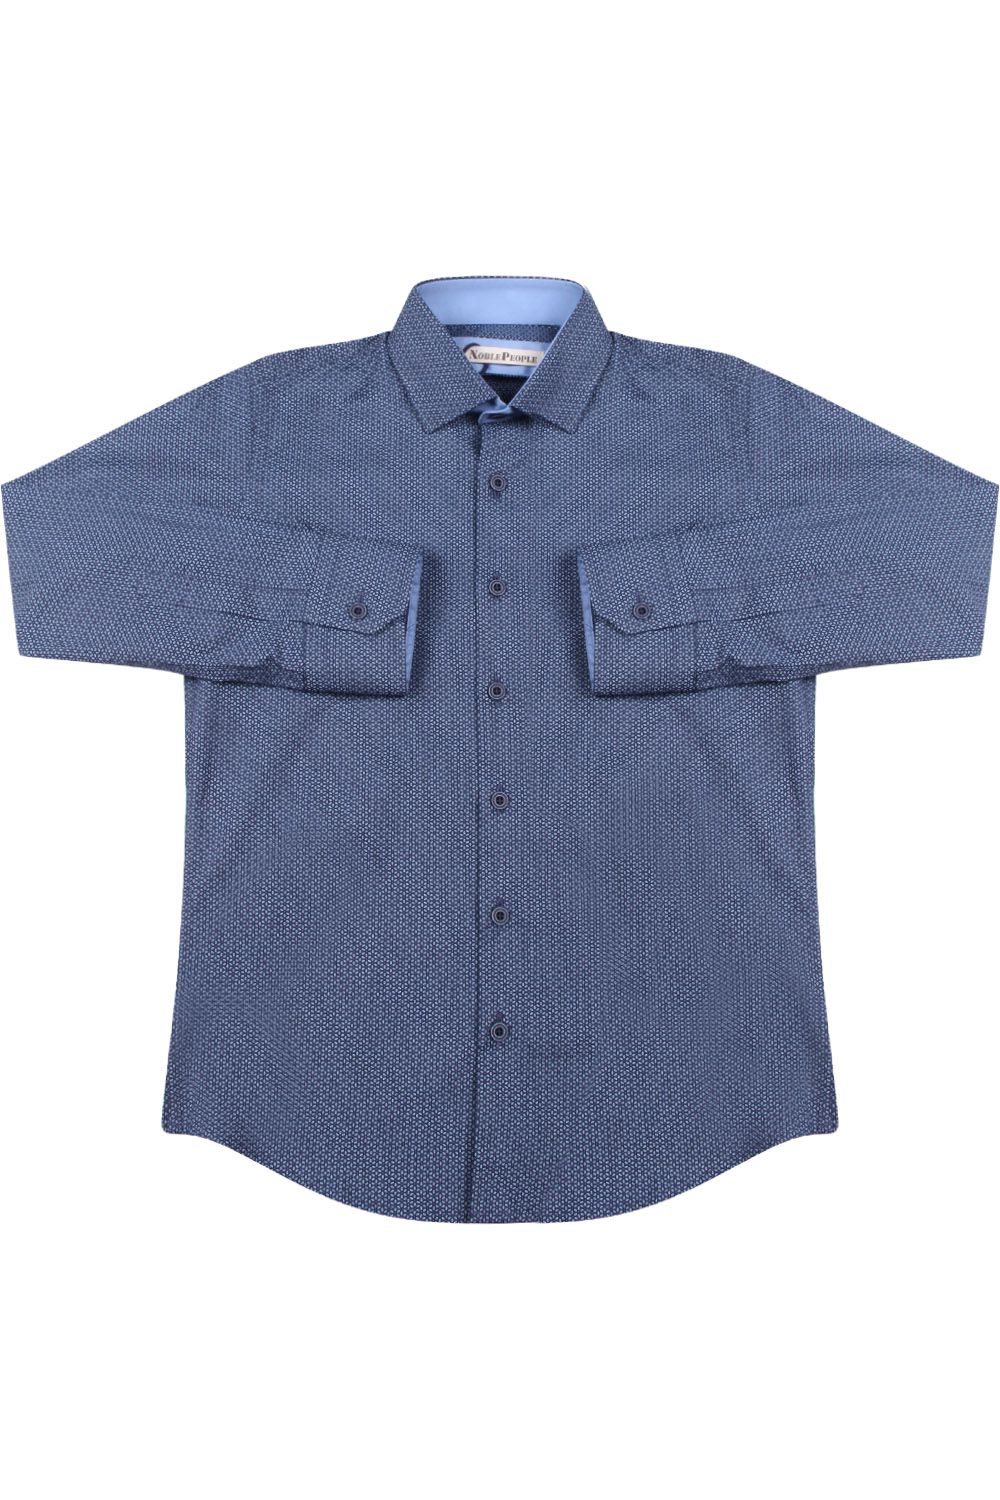 Рубашка Noble People, размер 122, цвет синий 19003-178 - фото 2